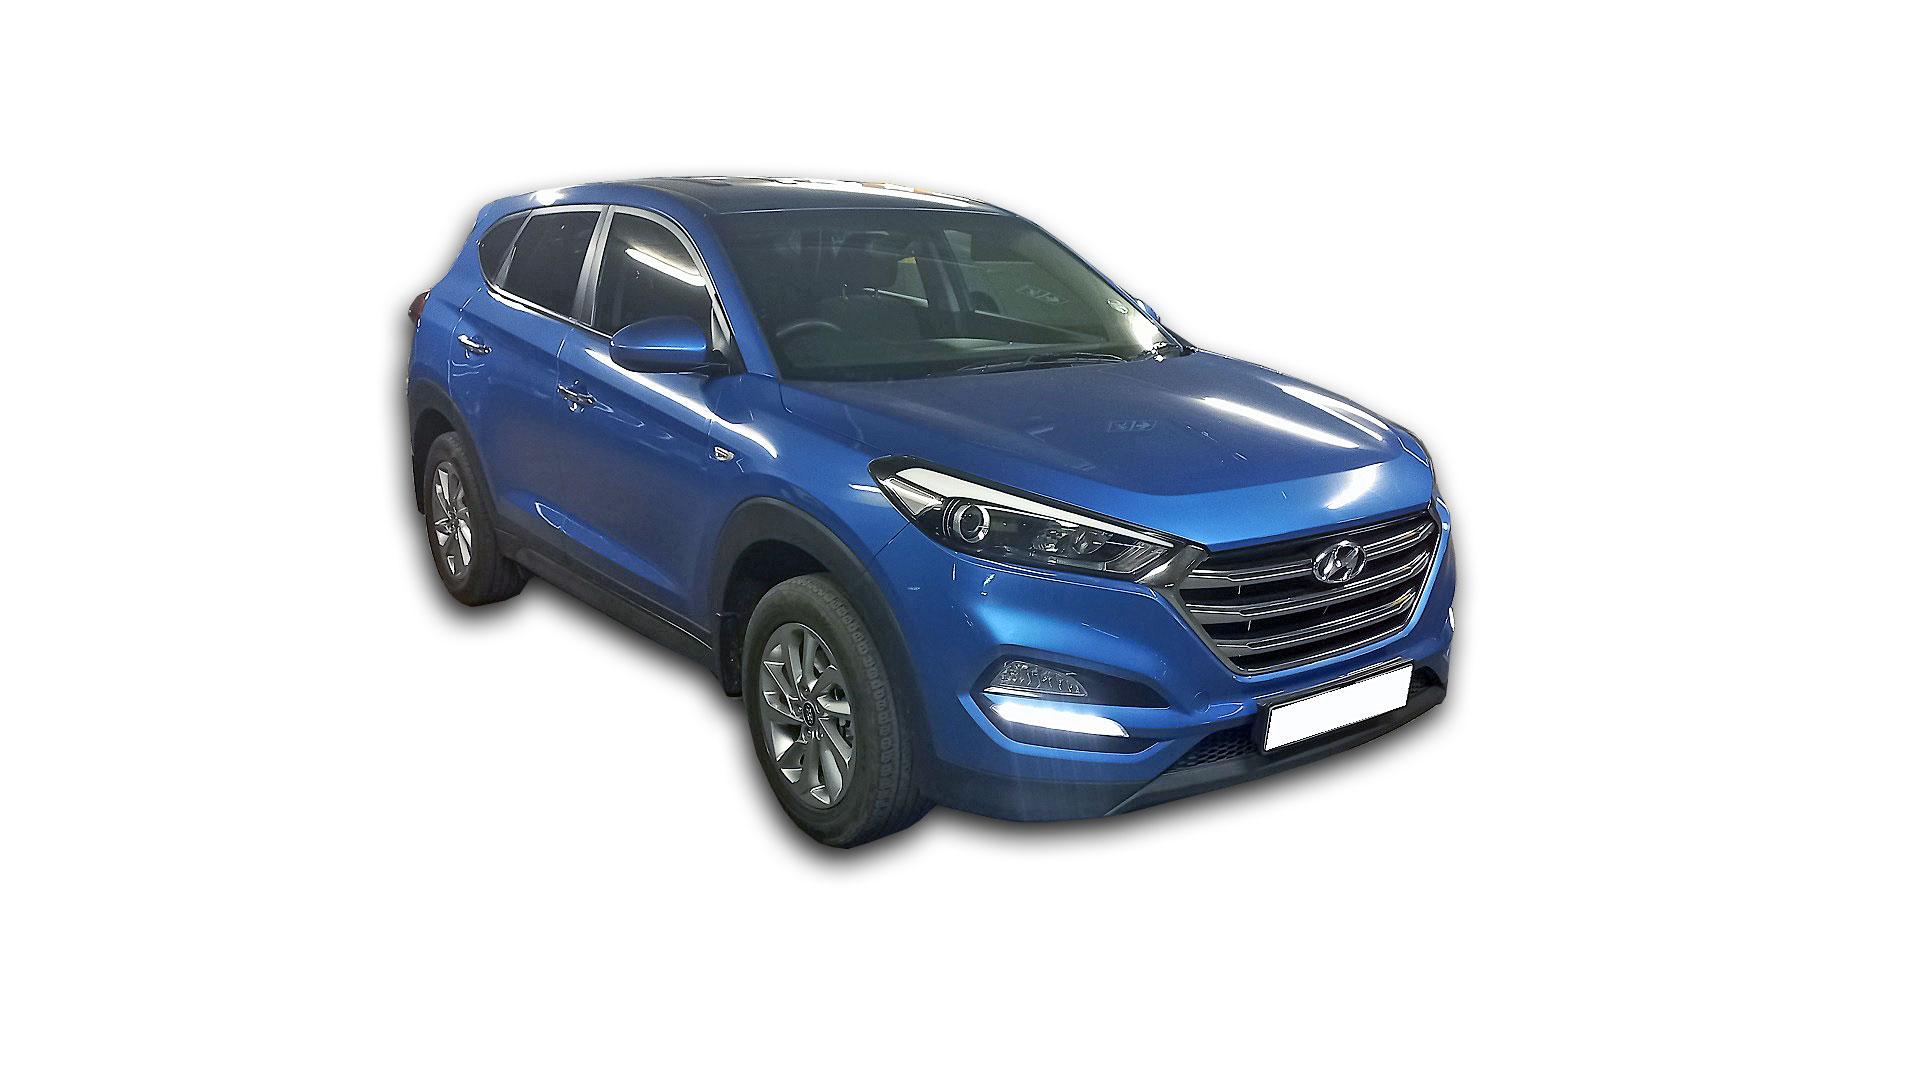 Hyundai Tucson 2.0 Premium